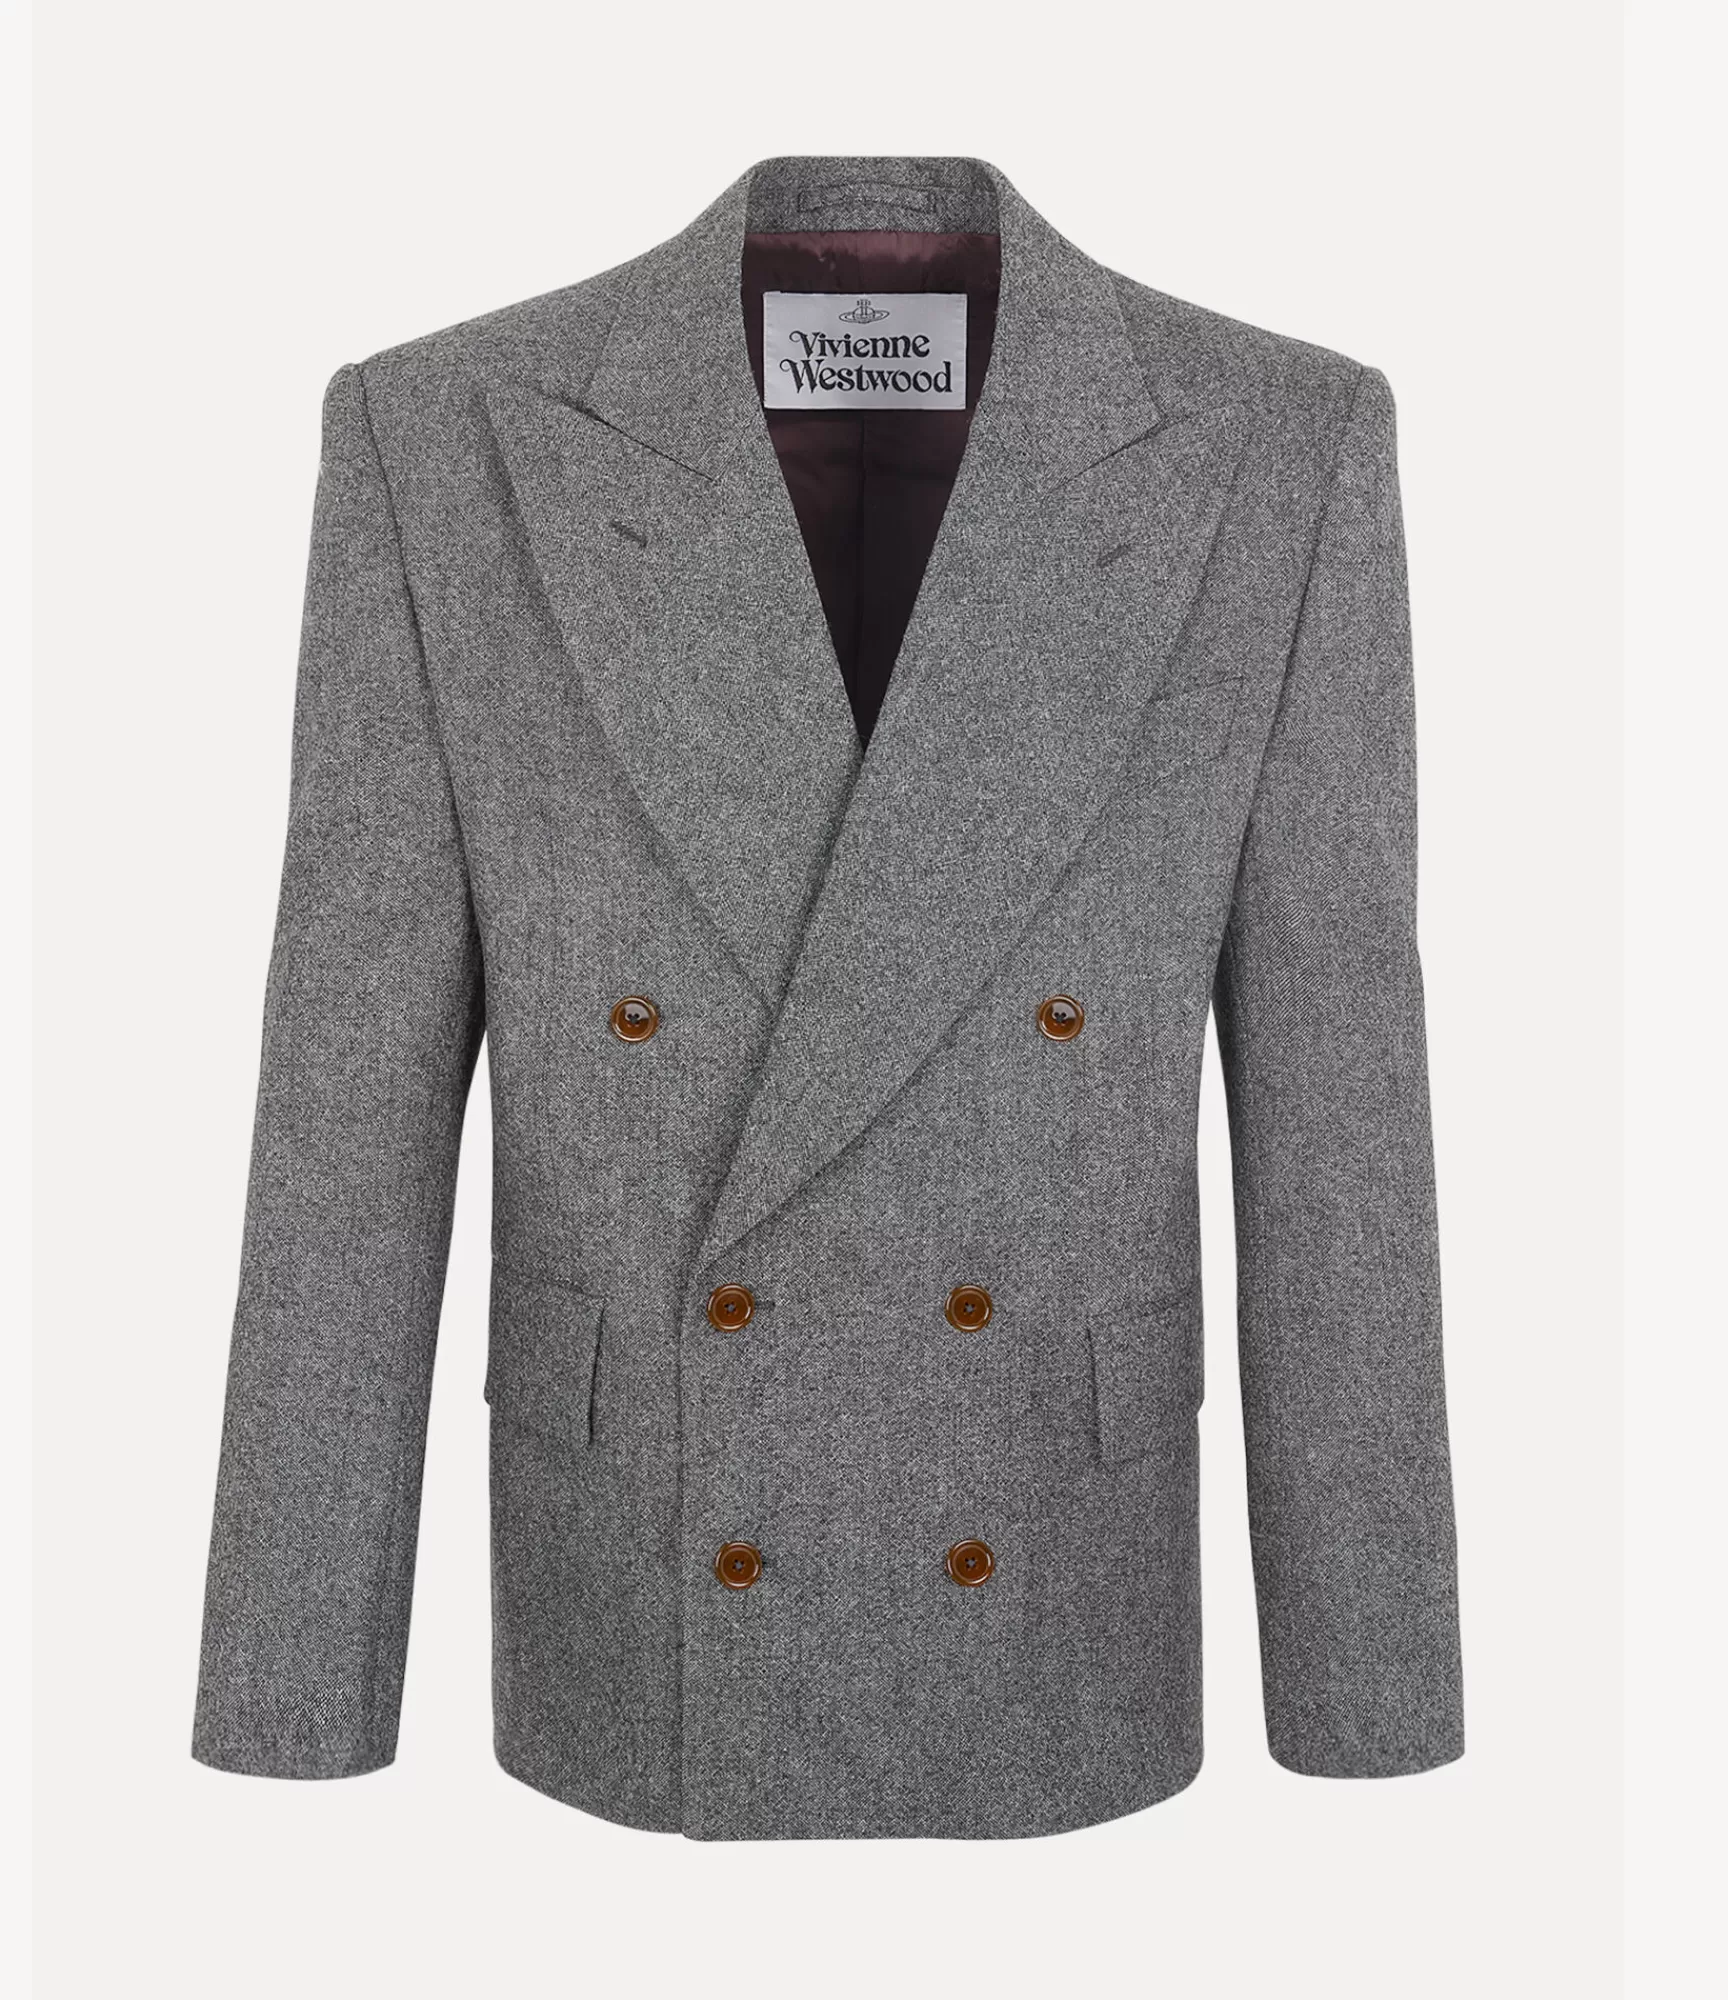 Vivienne Westwood Coats and Jackets*Humphrey jacket Black/white